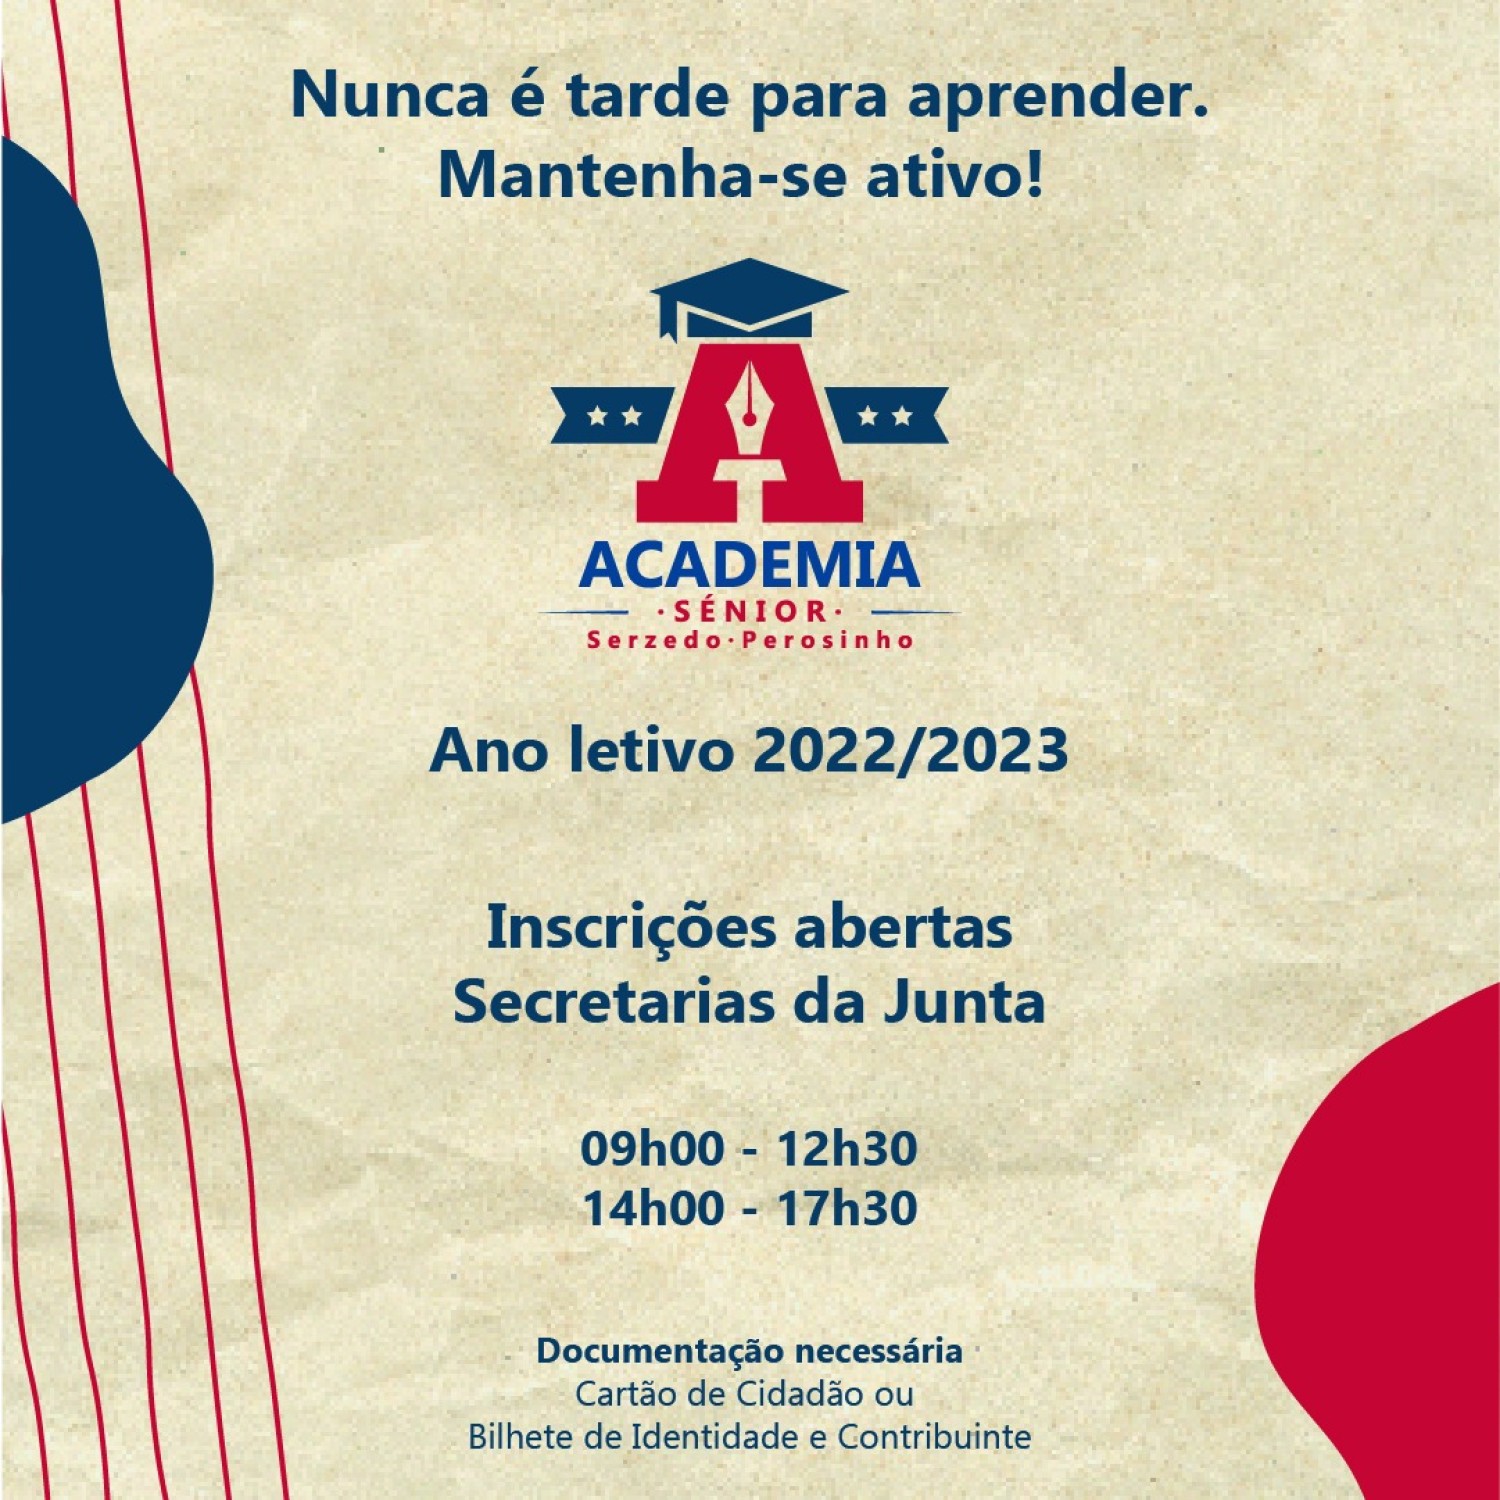 Academia Sénior - Ano letivo 2022/2023